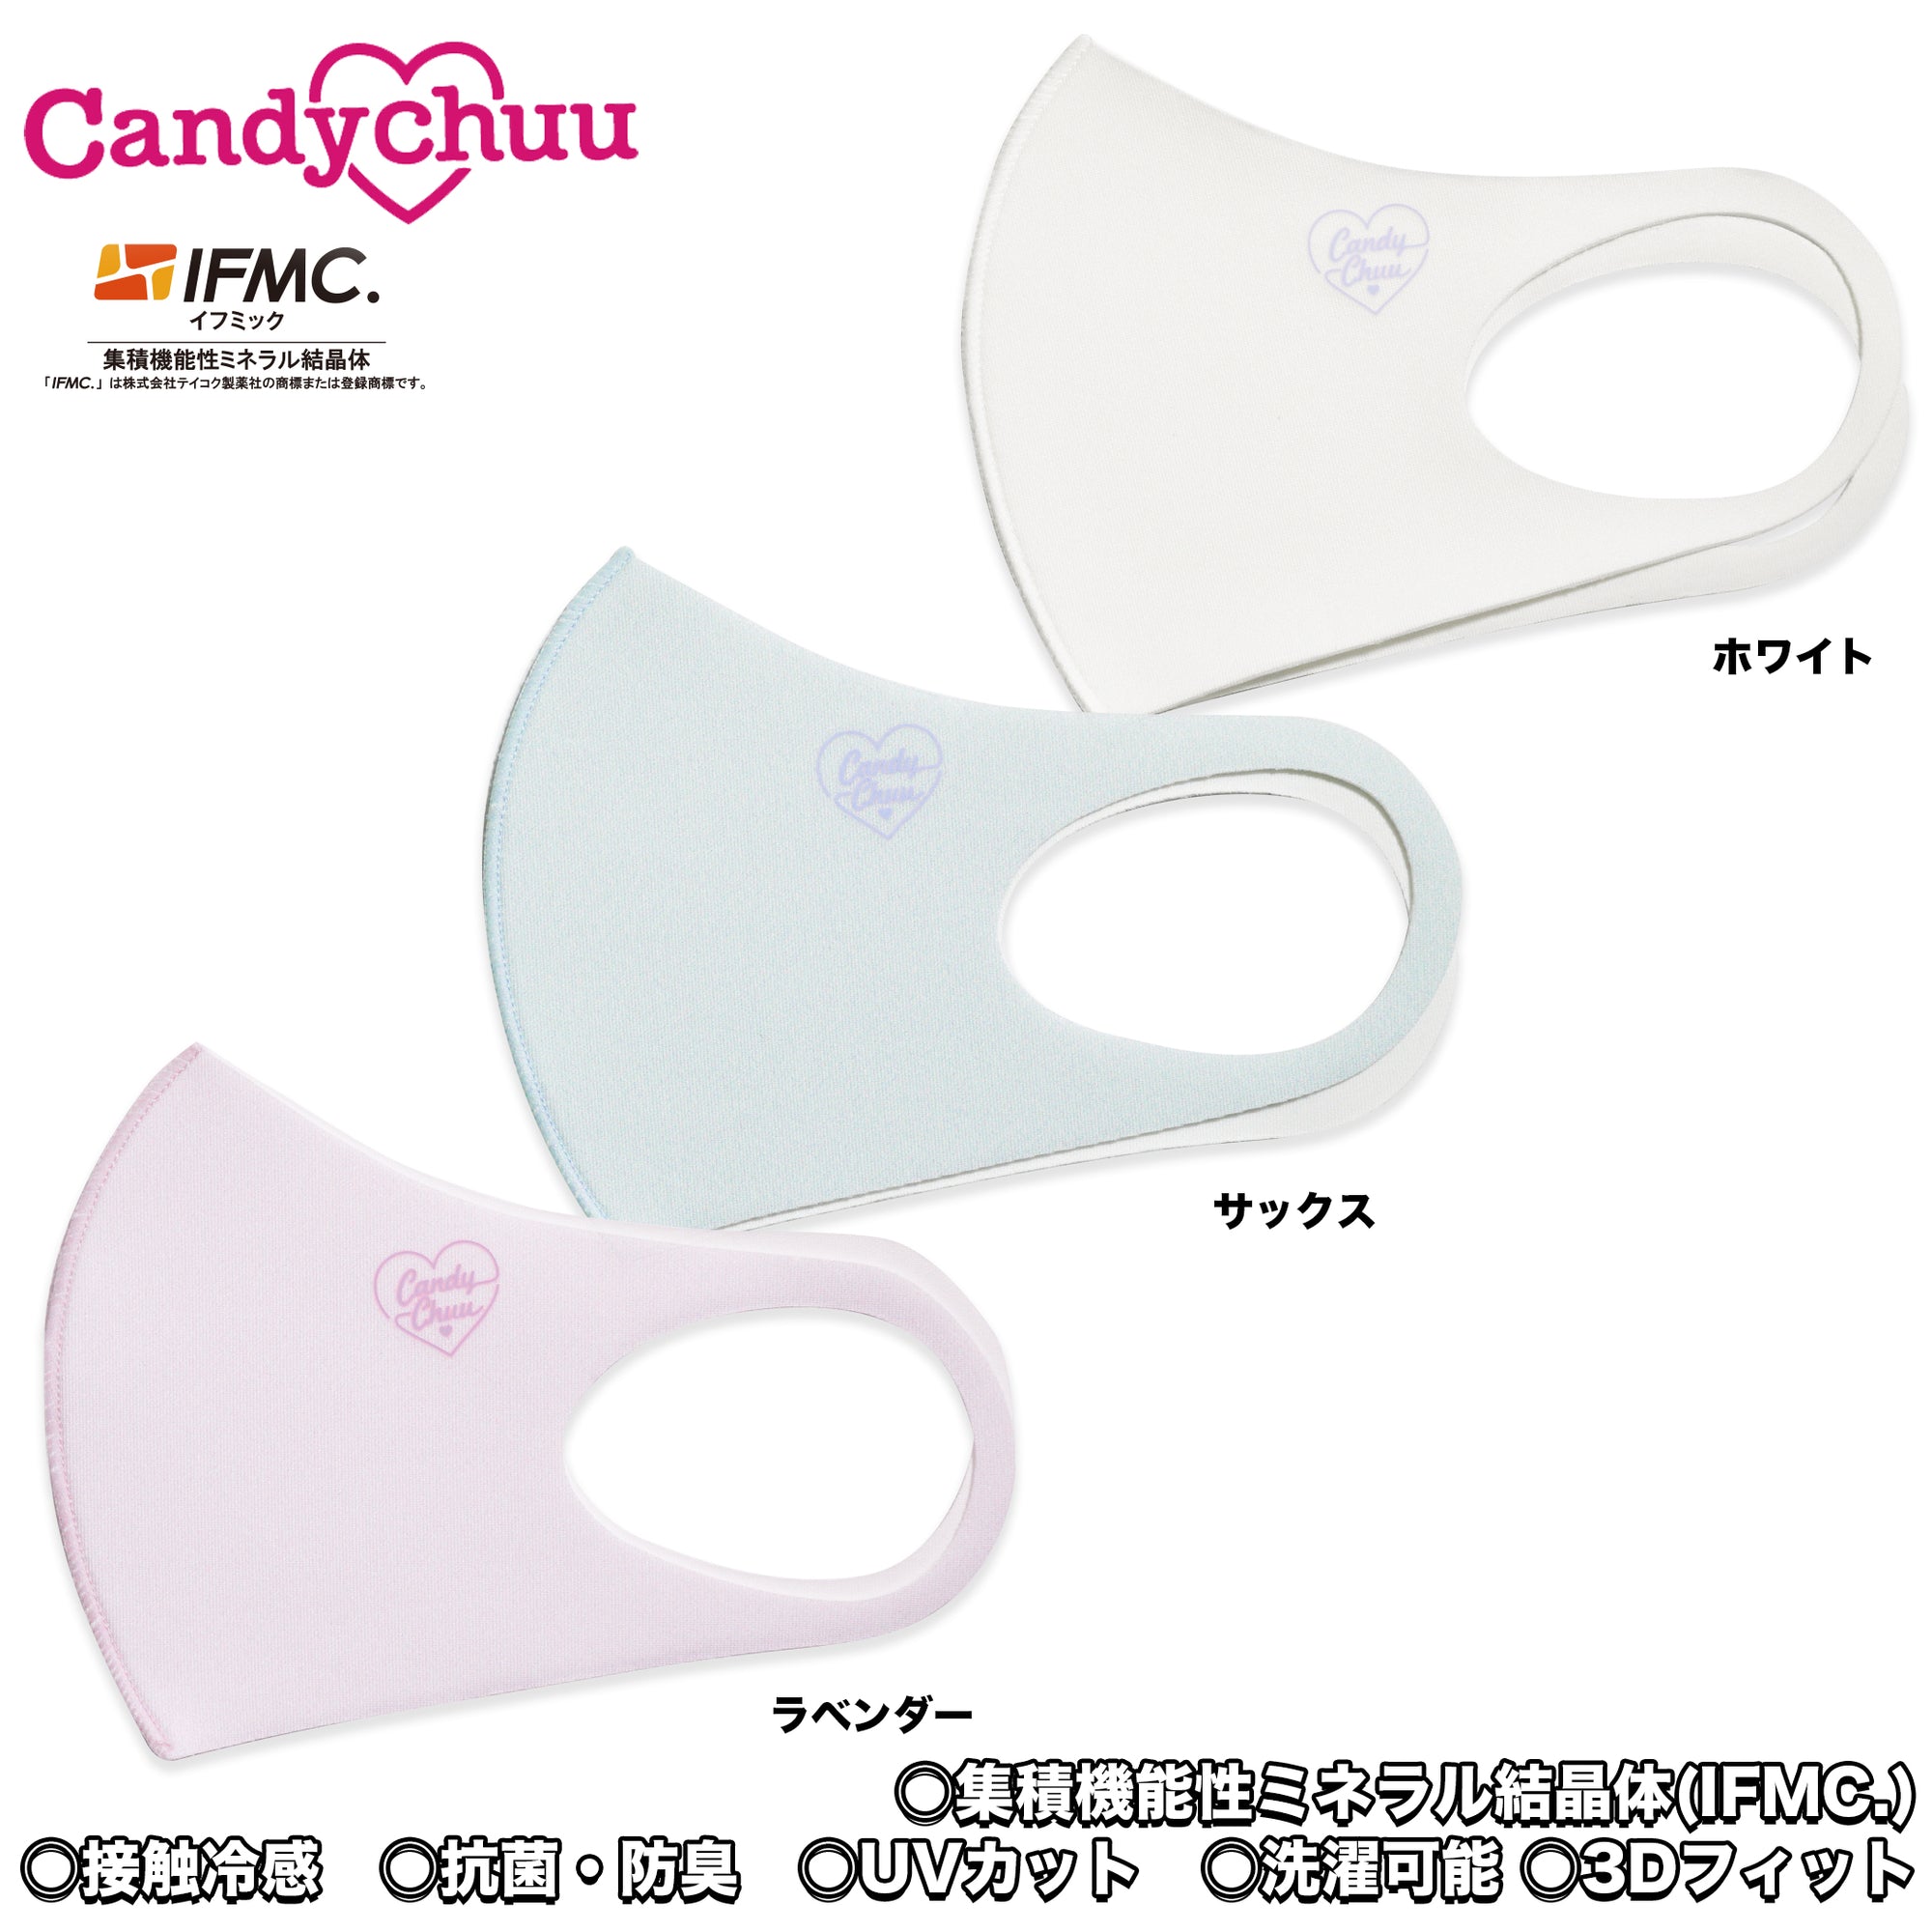 (40%オフ! セール商品)ミネラル マスク Candychuu ロゴ (200593)